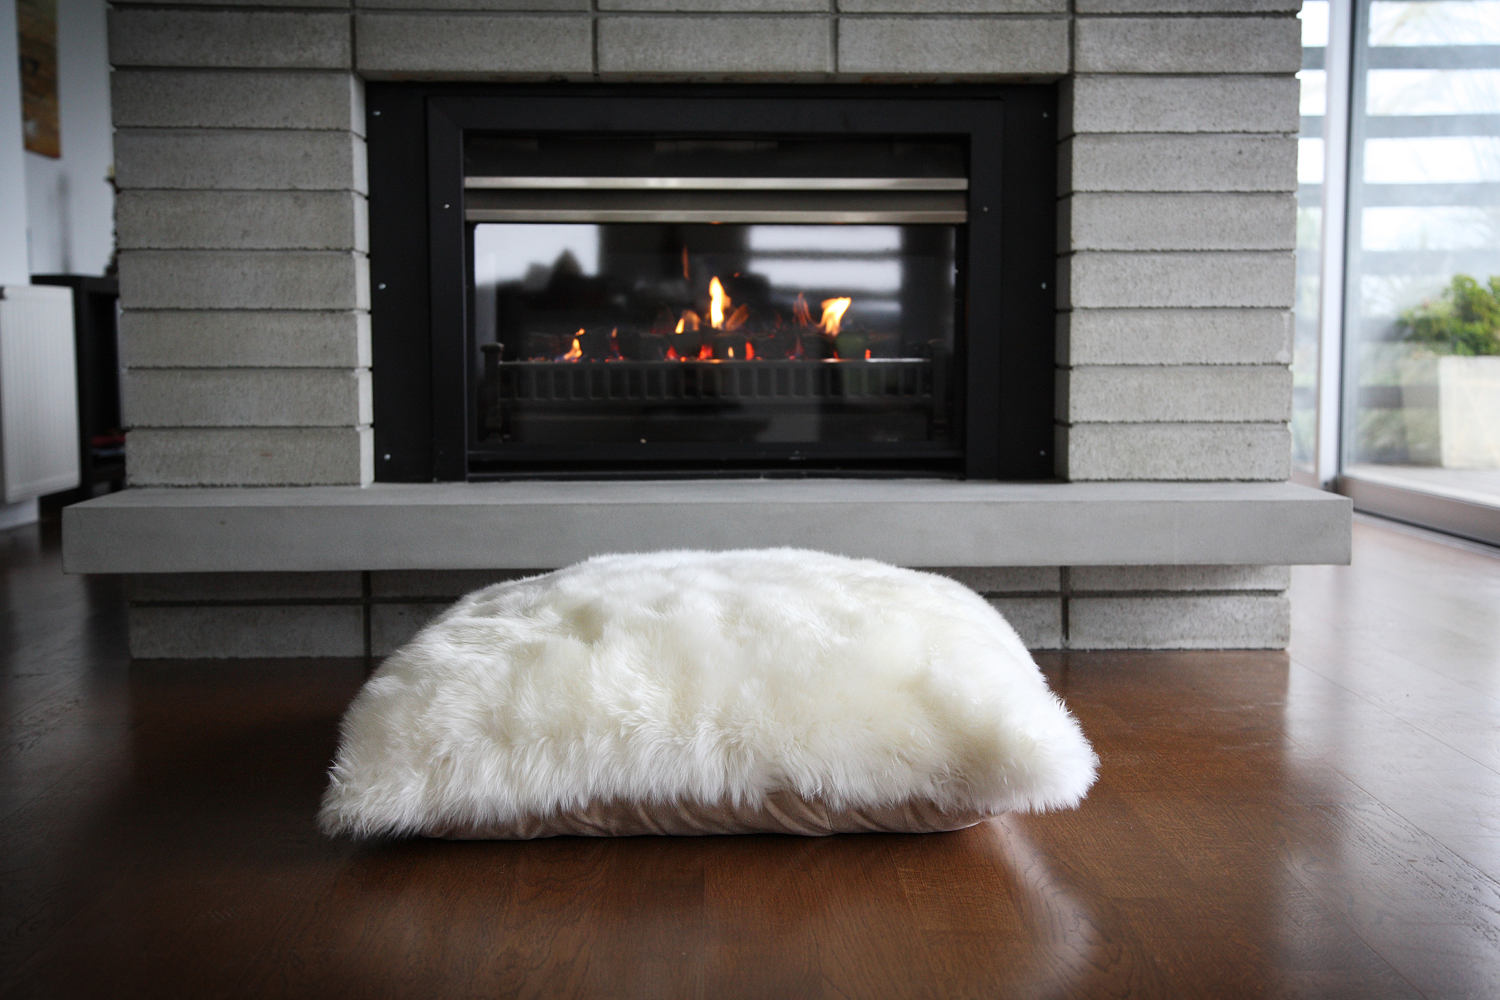 Fibre by Auskin Sheepskin Floor Cushion in front of fireplace